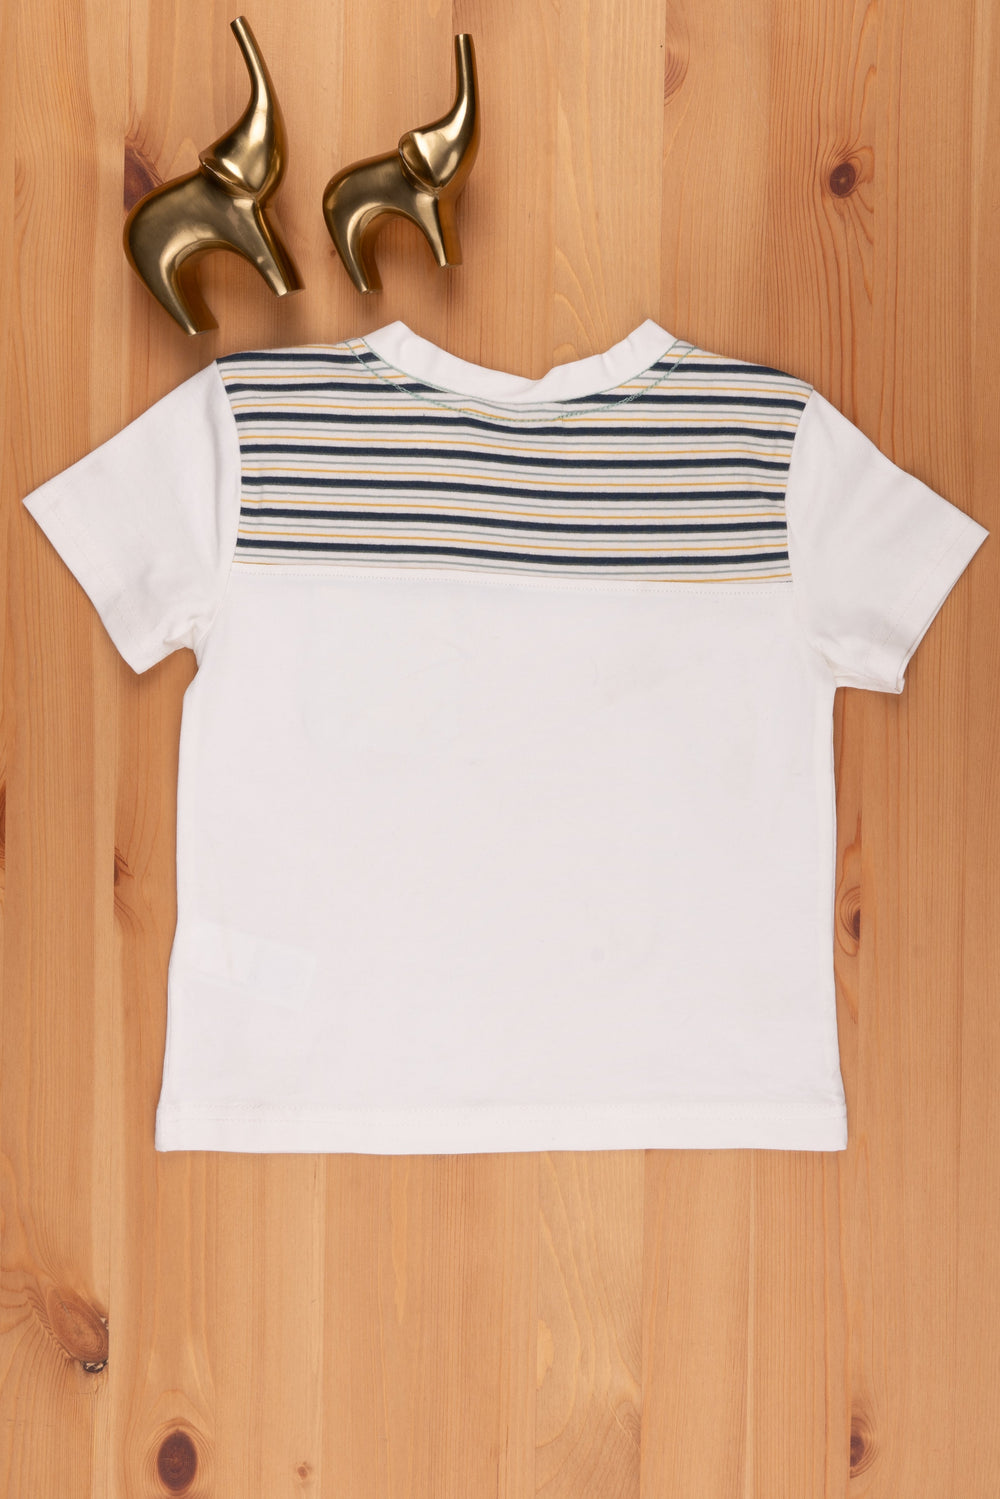 The Nesavu Boys T Shirt Unisex T-Shirt for Kids Express Their Personal Style psr silks Nesavu